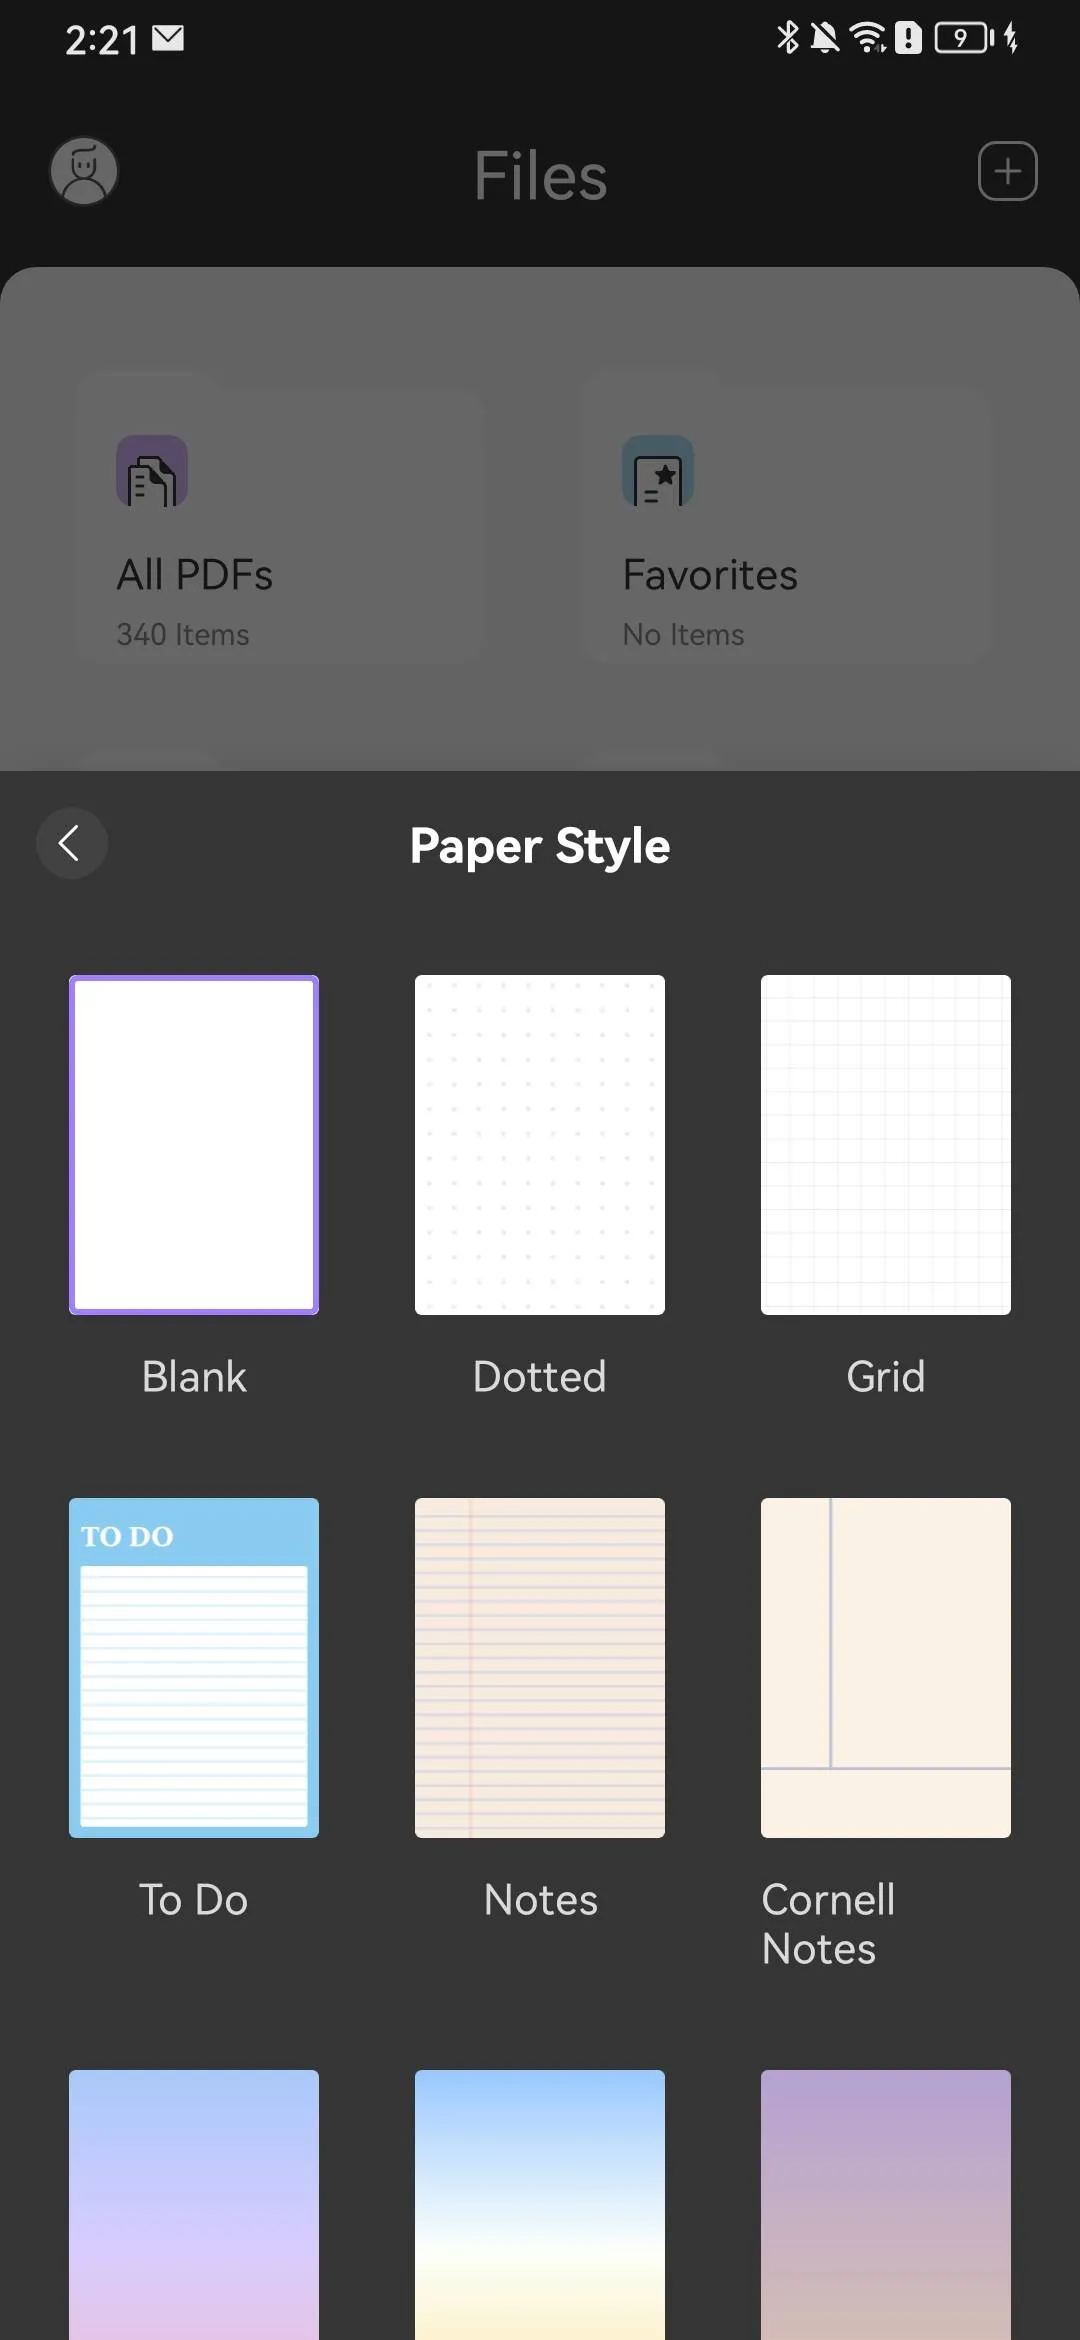 Choisissez le style de papier